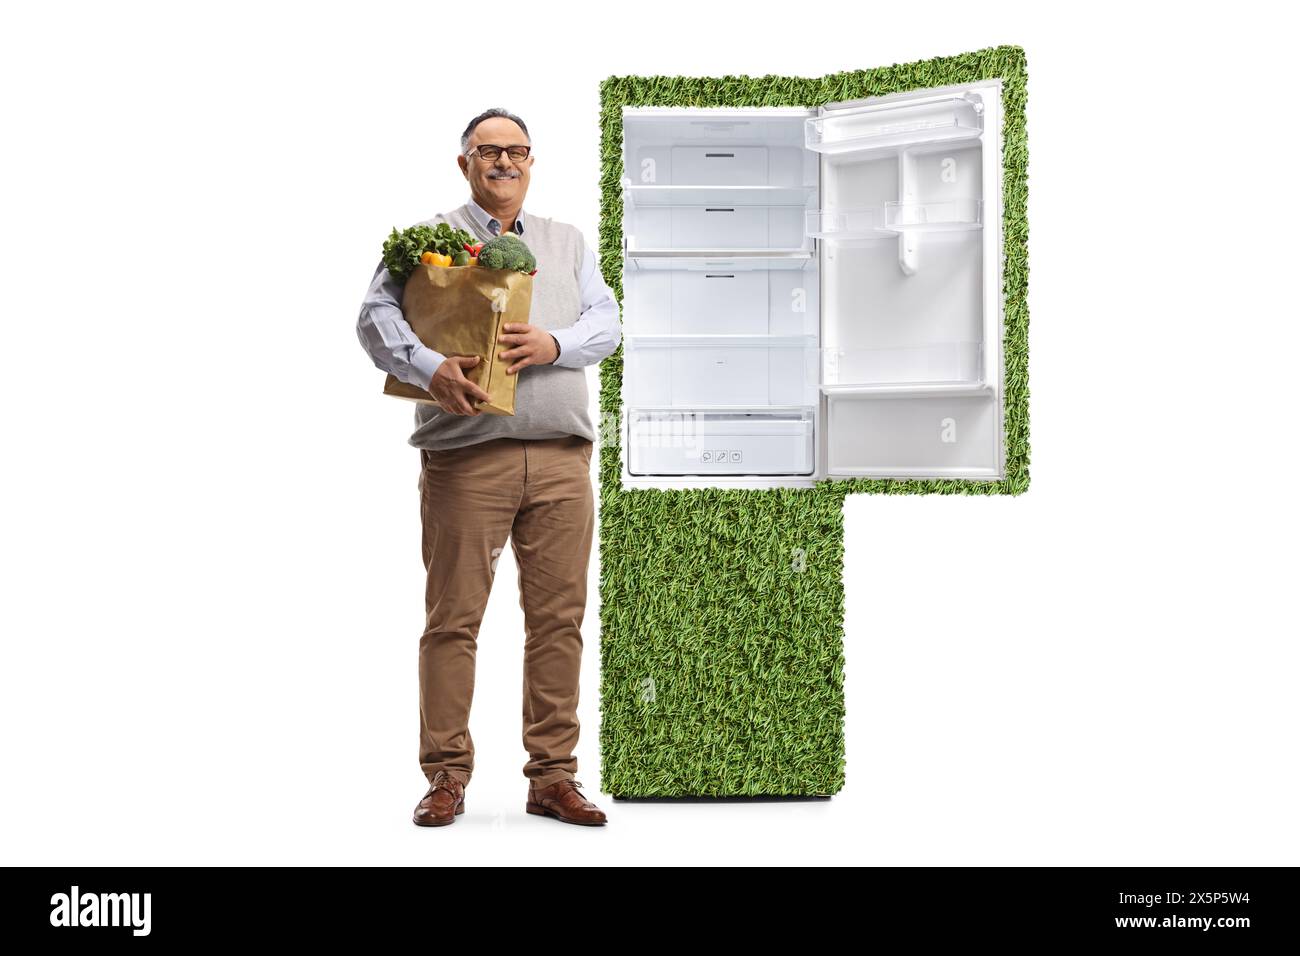 Porträt eines Reifen Mannes in voller Länge mit einer Lebensmitteltasche und einem leistungsfähigen Kühlschrank isoliert auf weißem Hintergrund Stockfoto